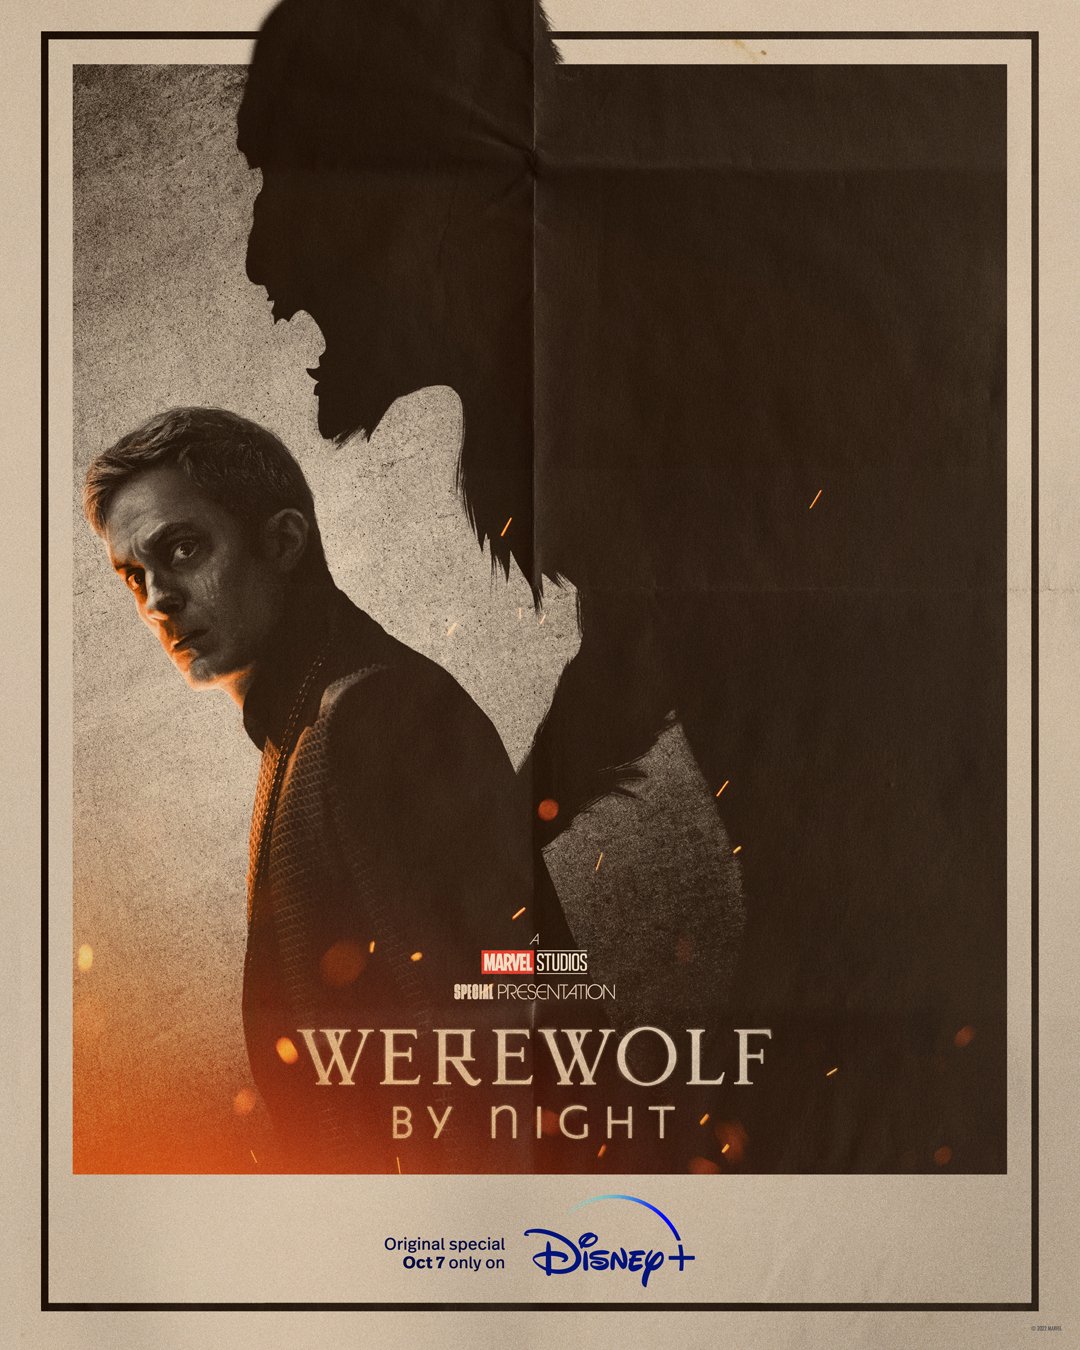 Werewolf by night, il protagonista e la sua ombra